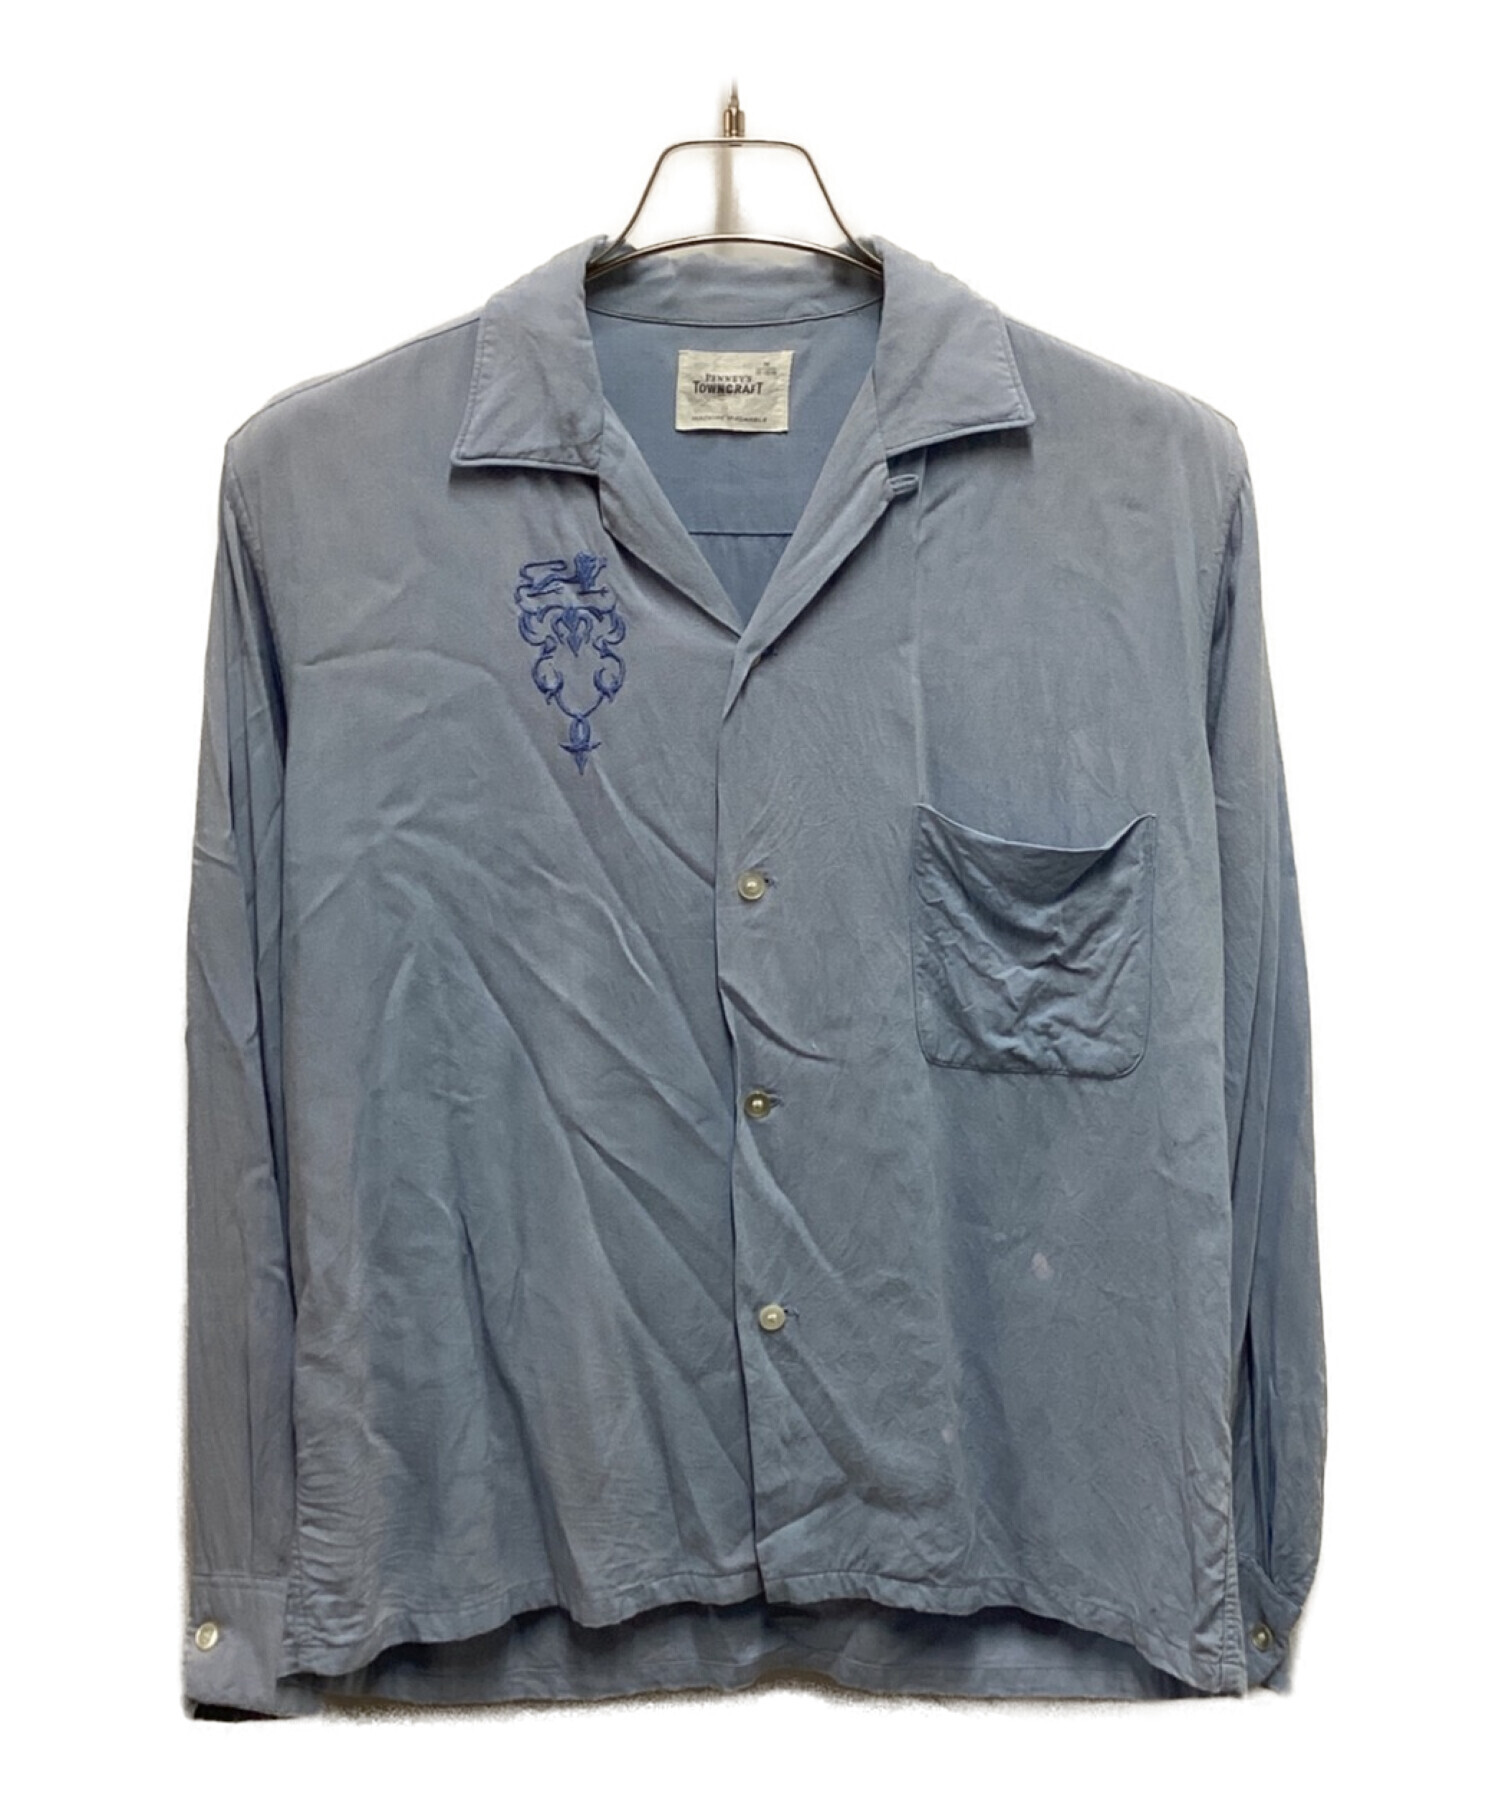 10,912円60s TOWNCRAFT vintage shirt タウンクラフト